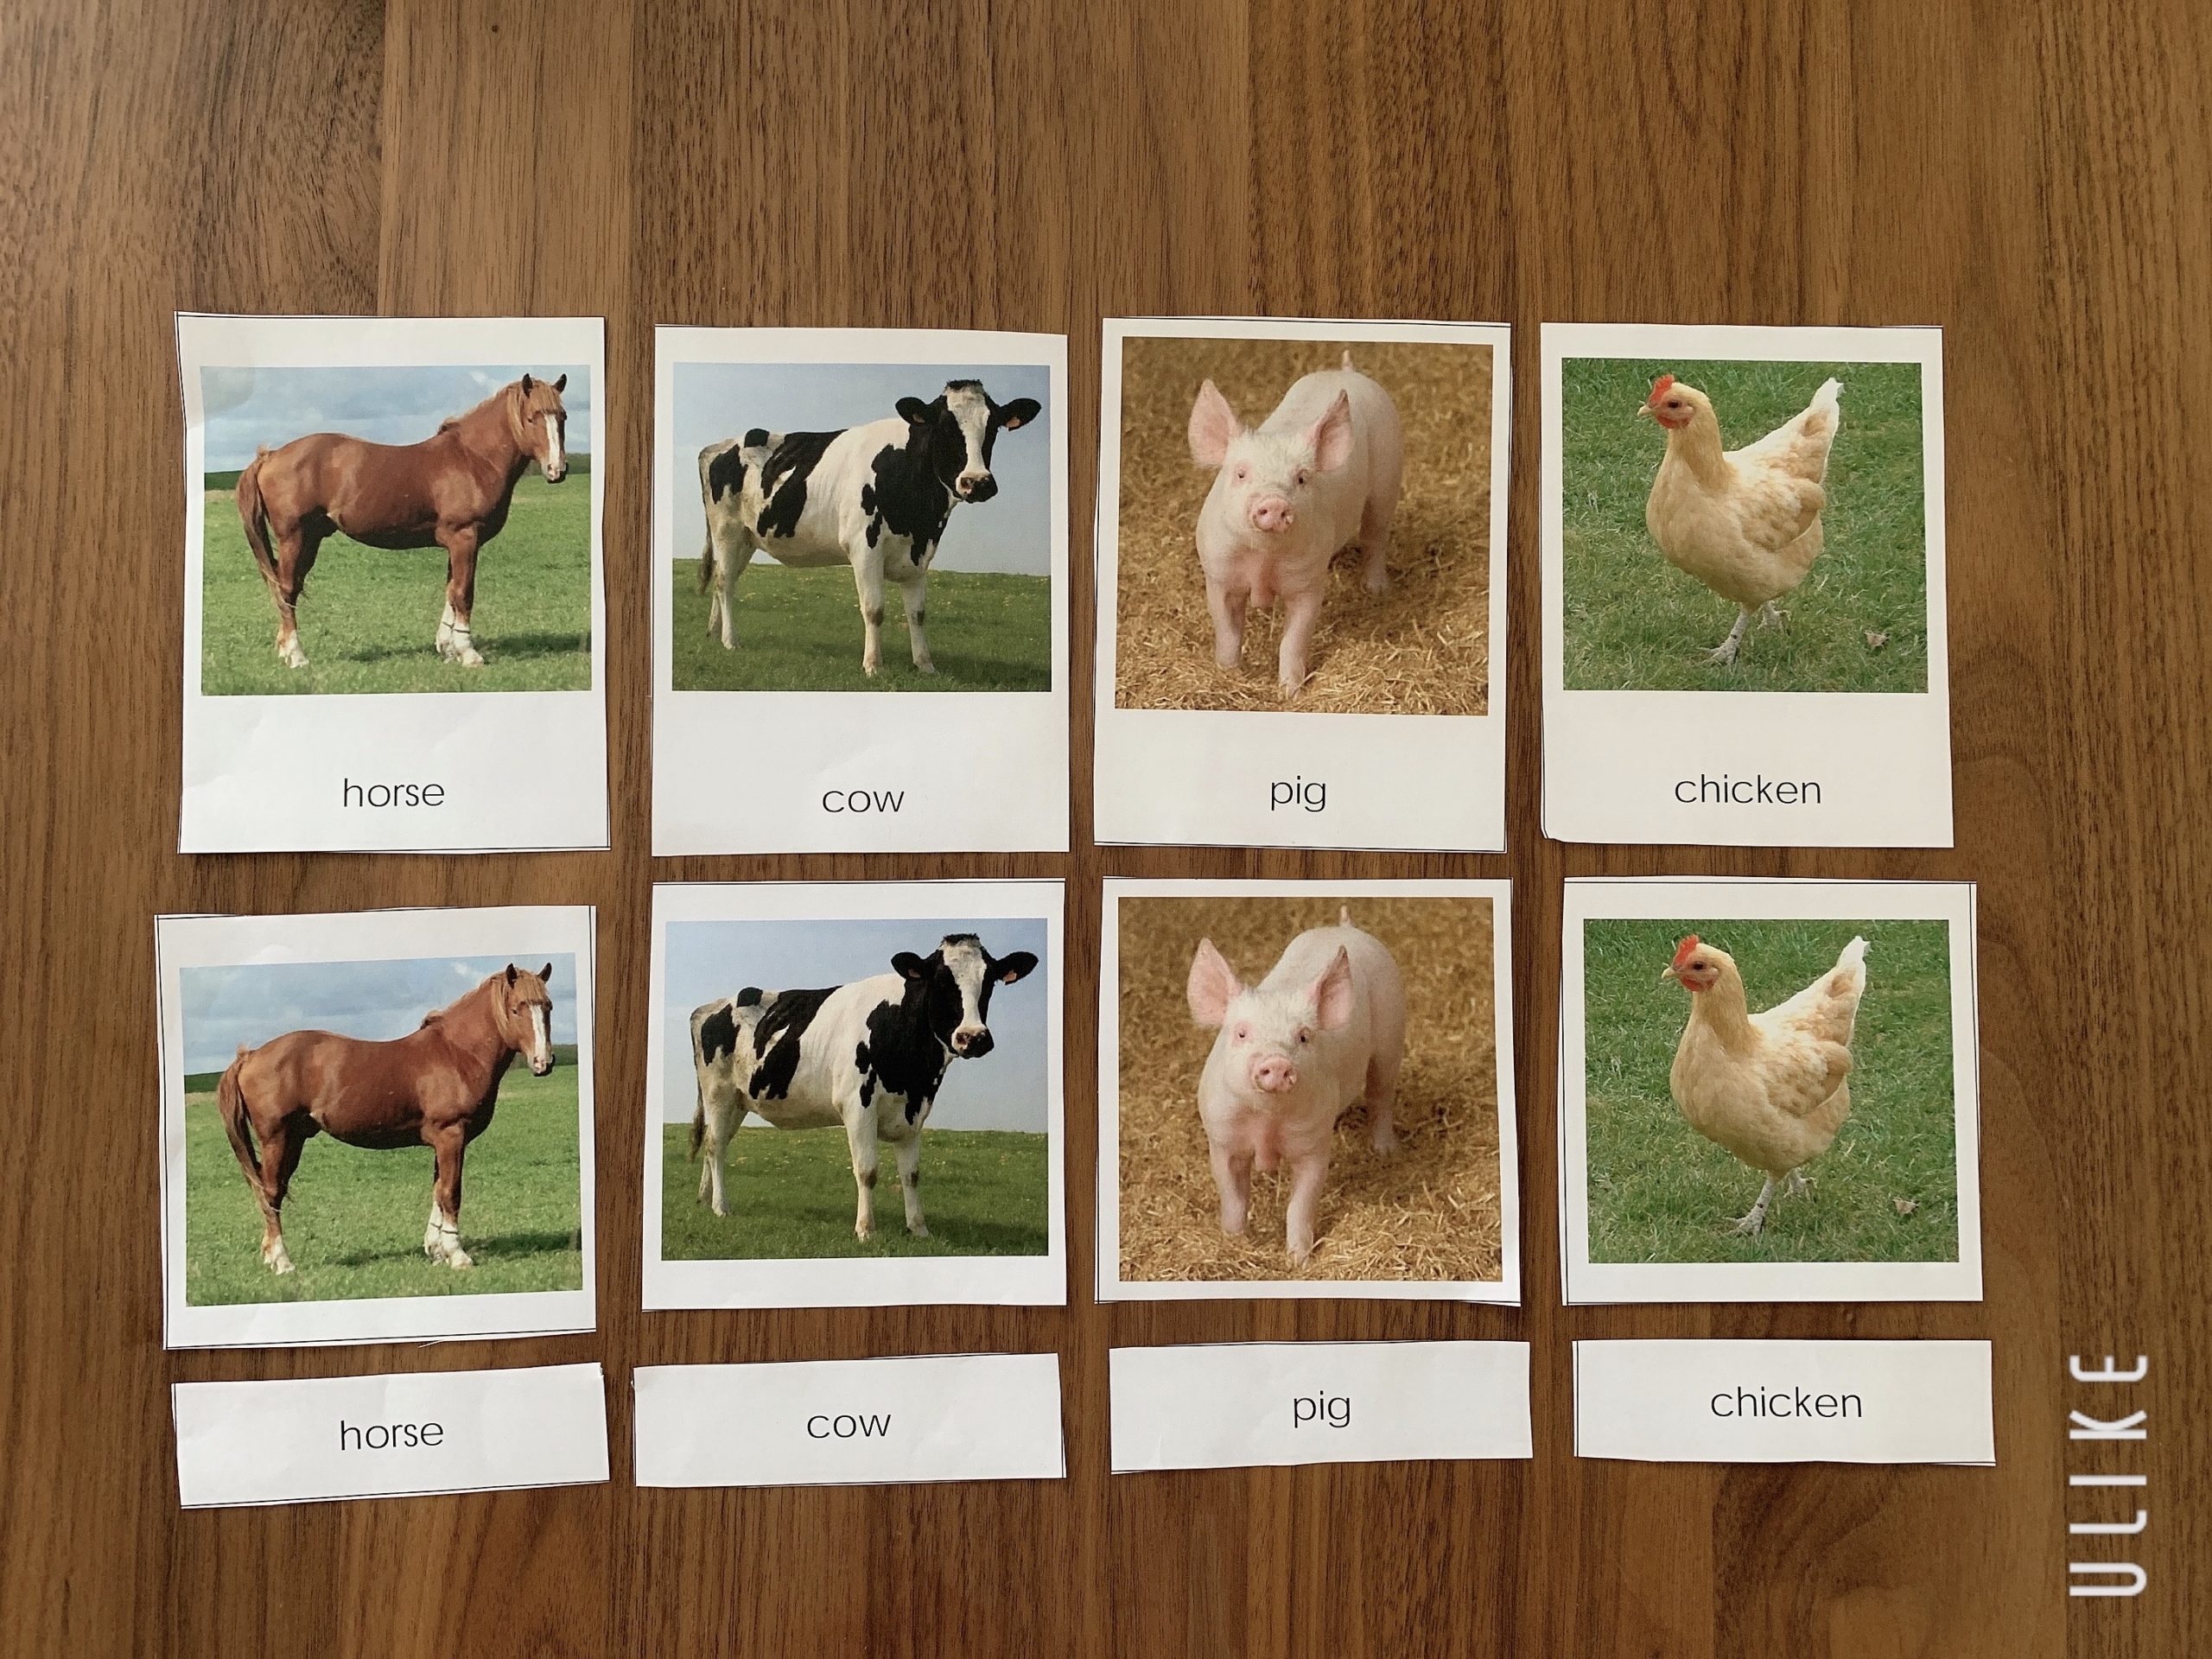 絵カードの無料ダウンロードサイトを紹介 動物の絵カードでおうちモンテや知育をしよう おうちdeモンテ